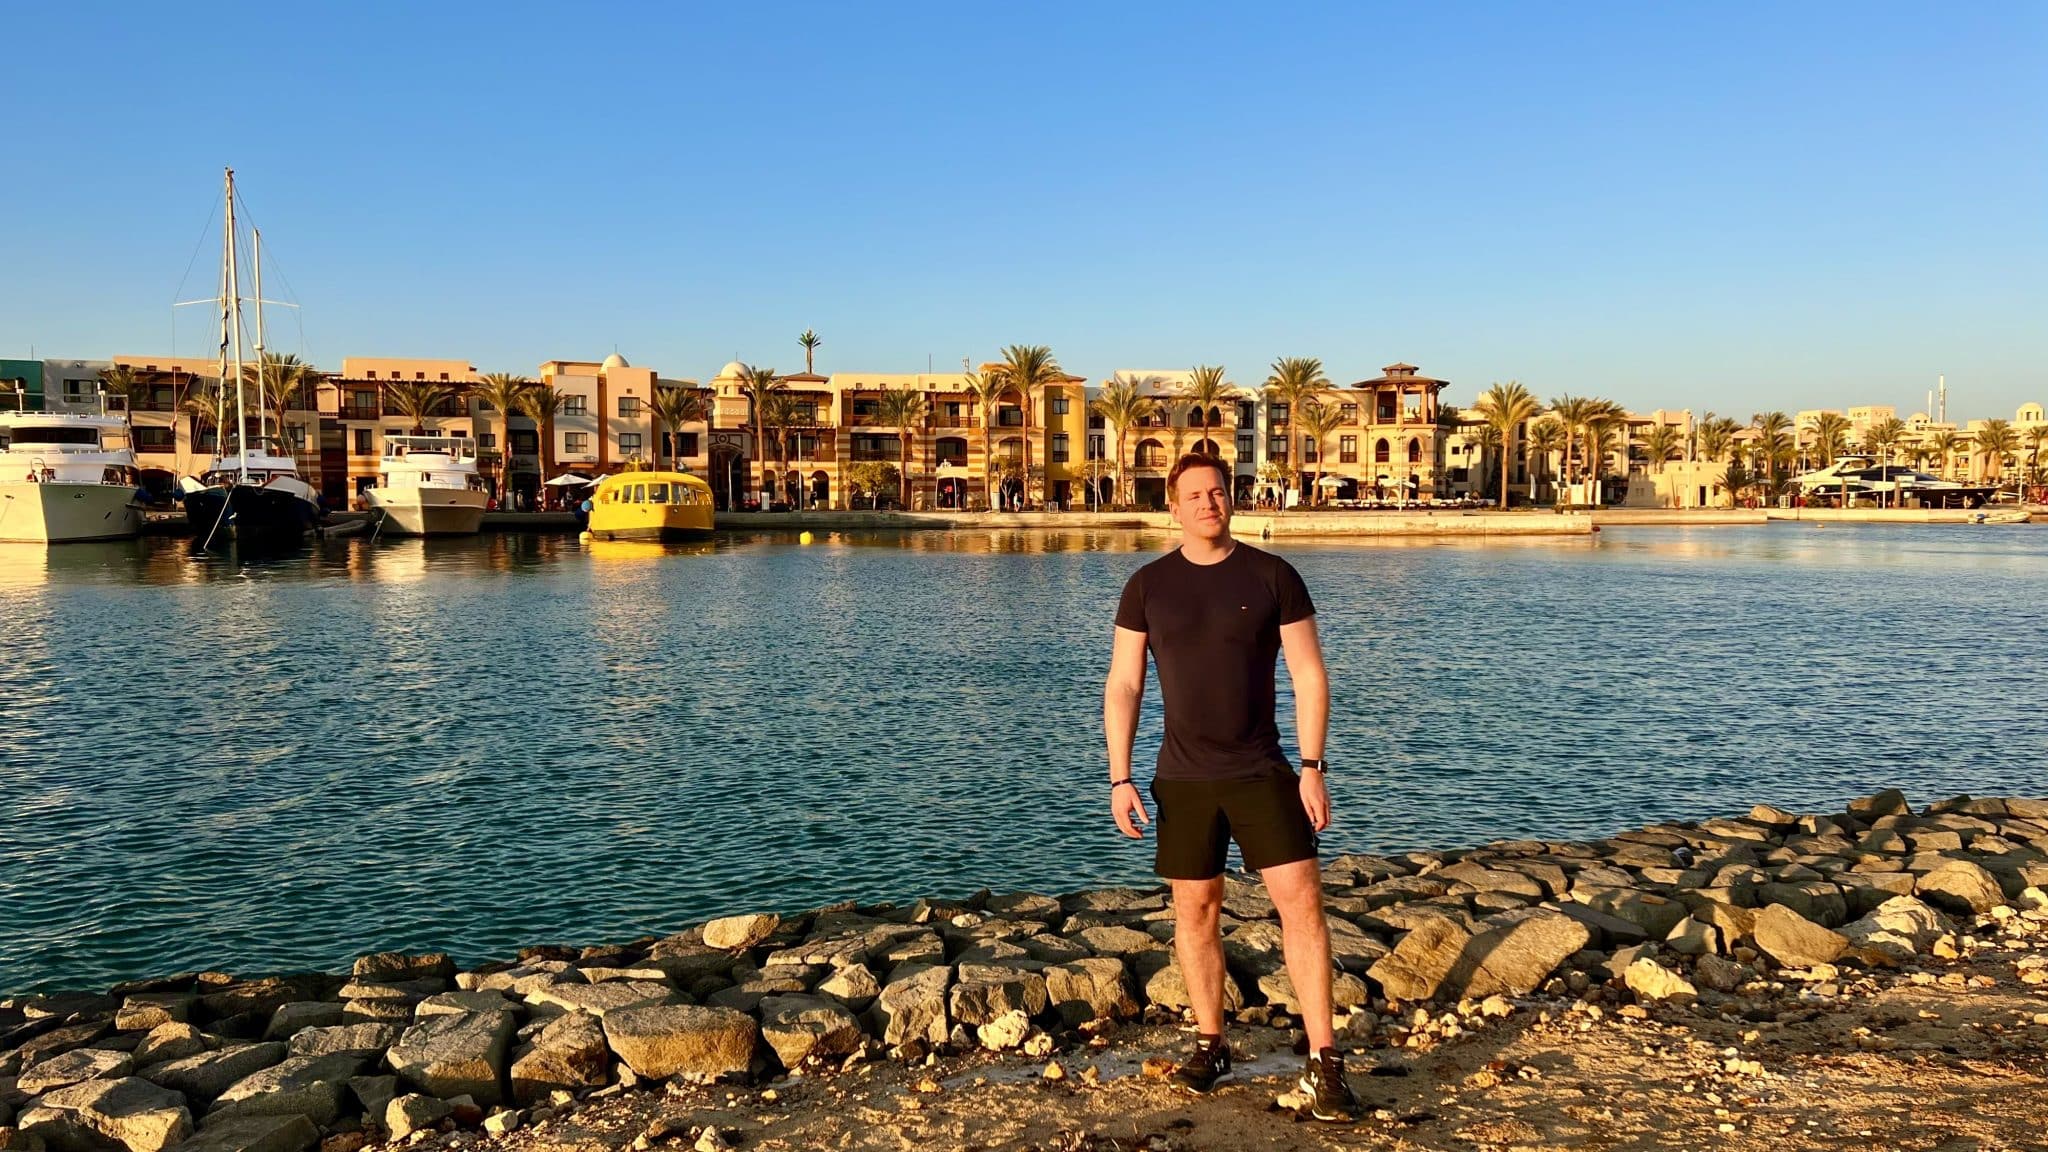 Joggen in Ägypten Erfahrungsbericht – zu Fuß durch die Wüste?